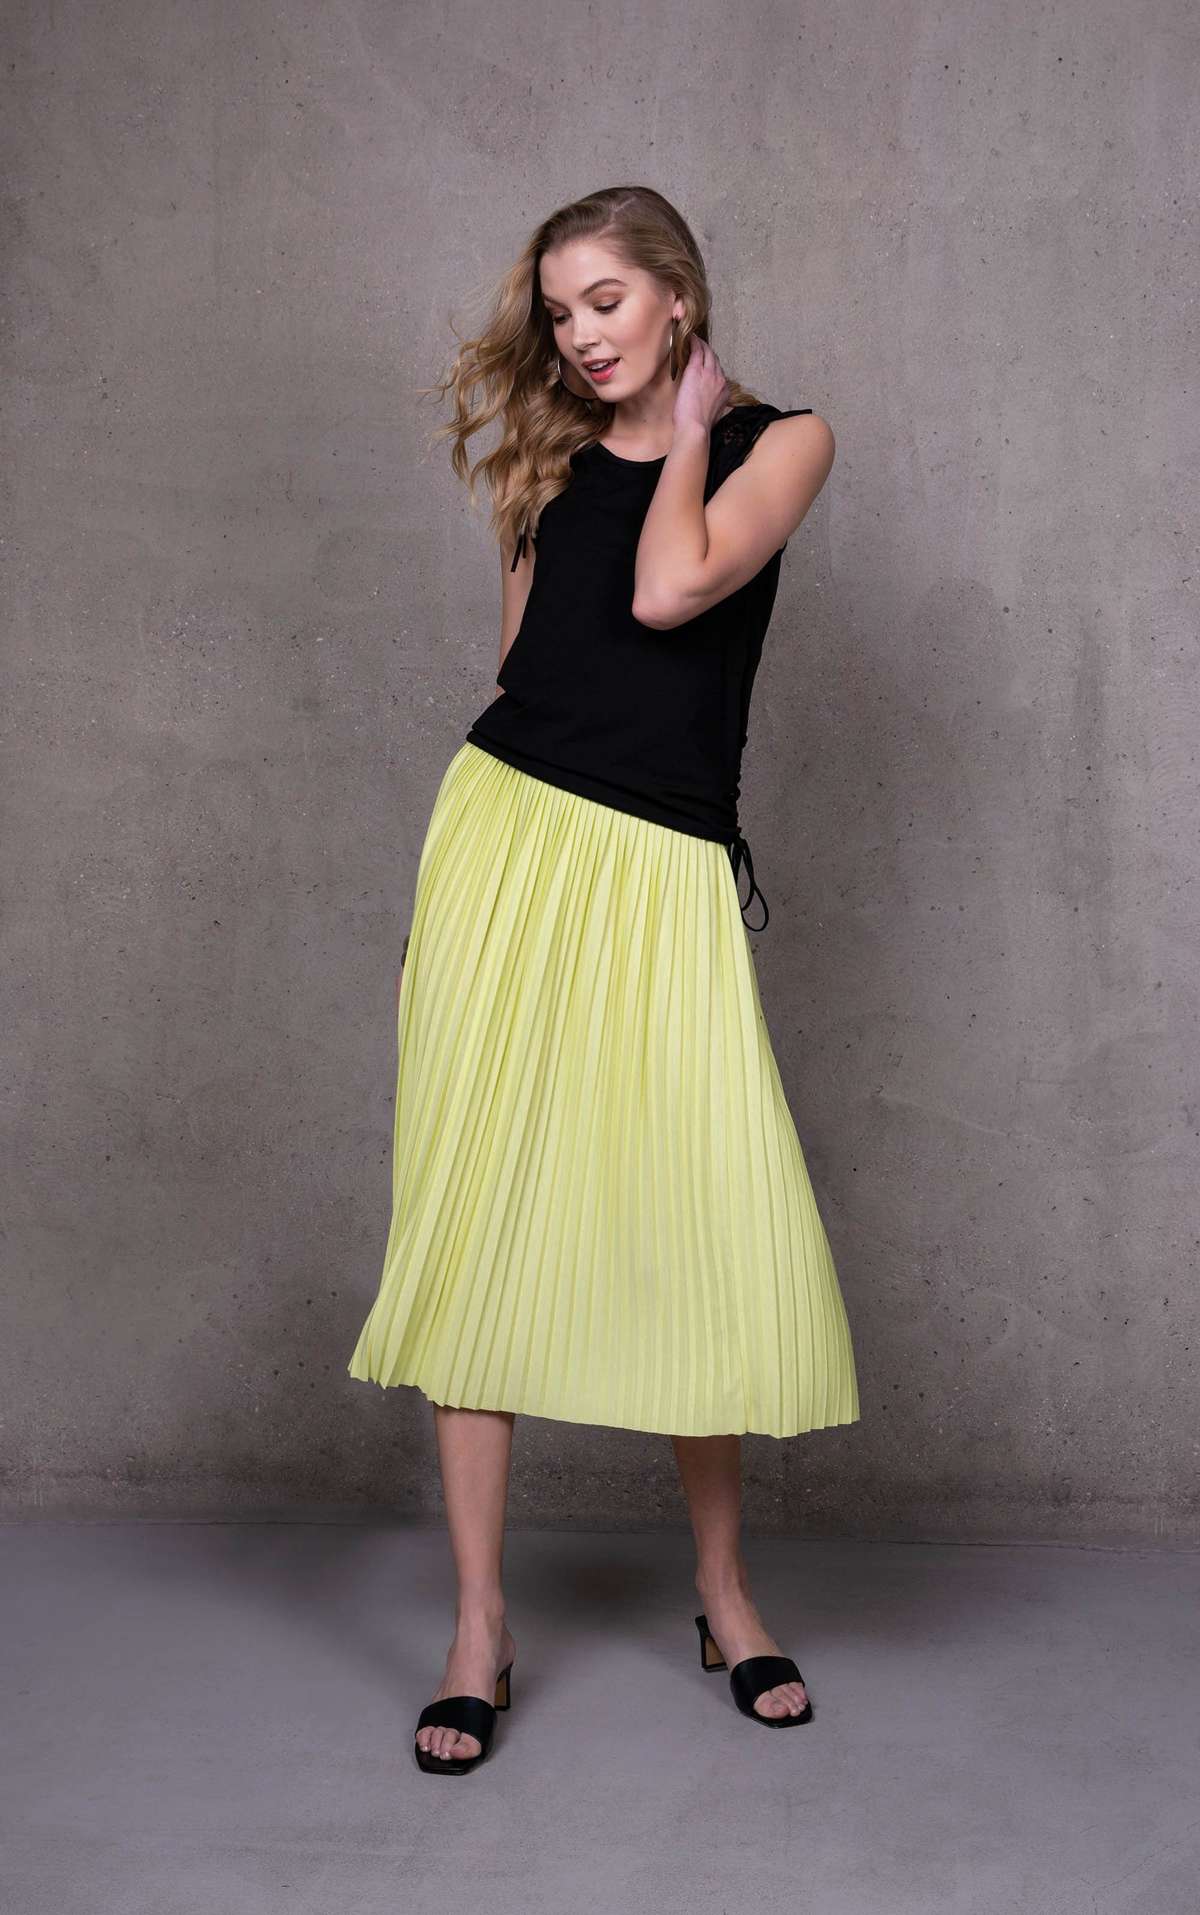 Плиссированная юбка Летняя плиссированная юбка с контрастными полосками и эластичным поясом